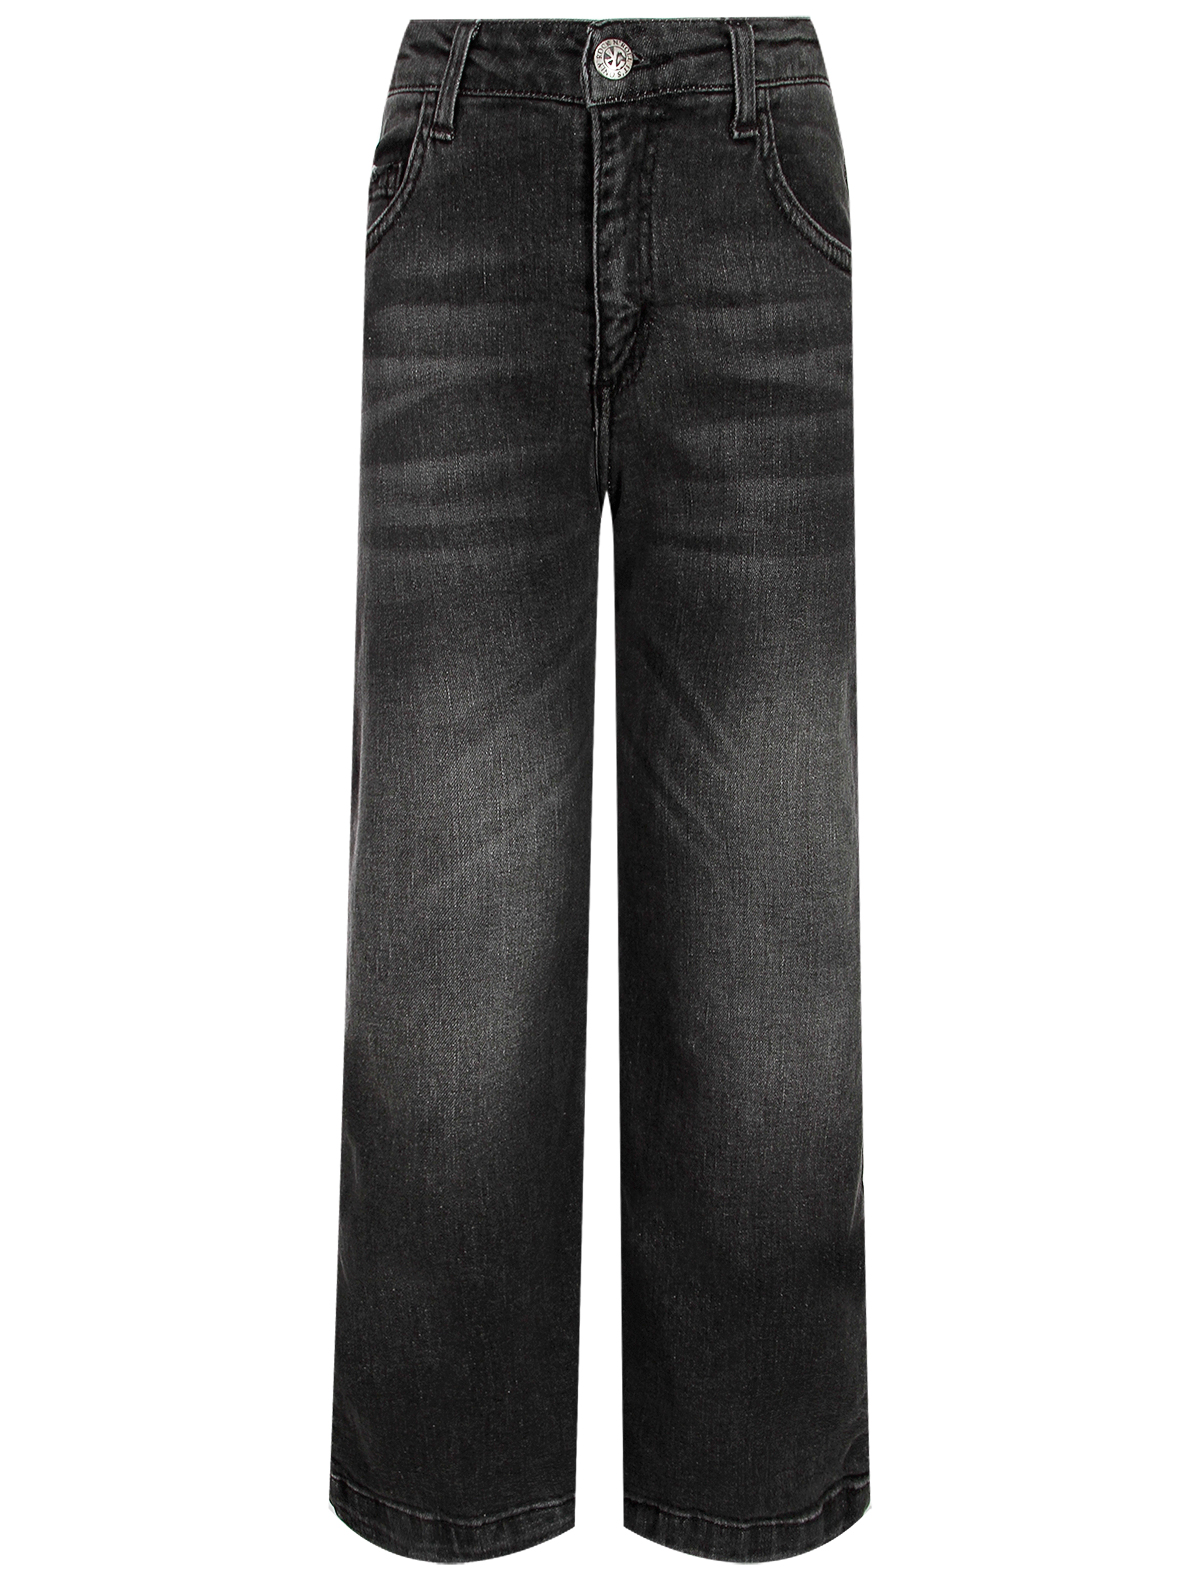 джинсы john richmond для девочки, черные